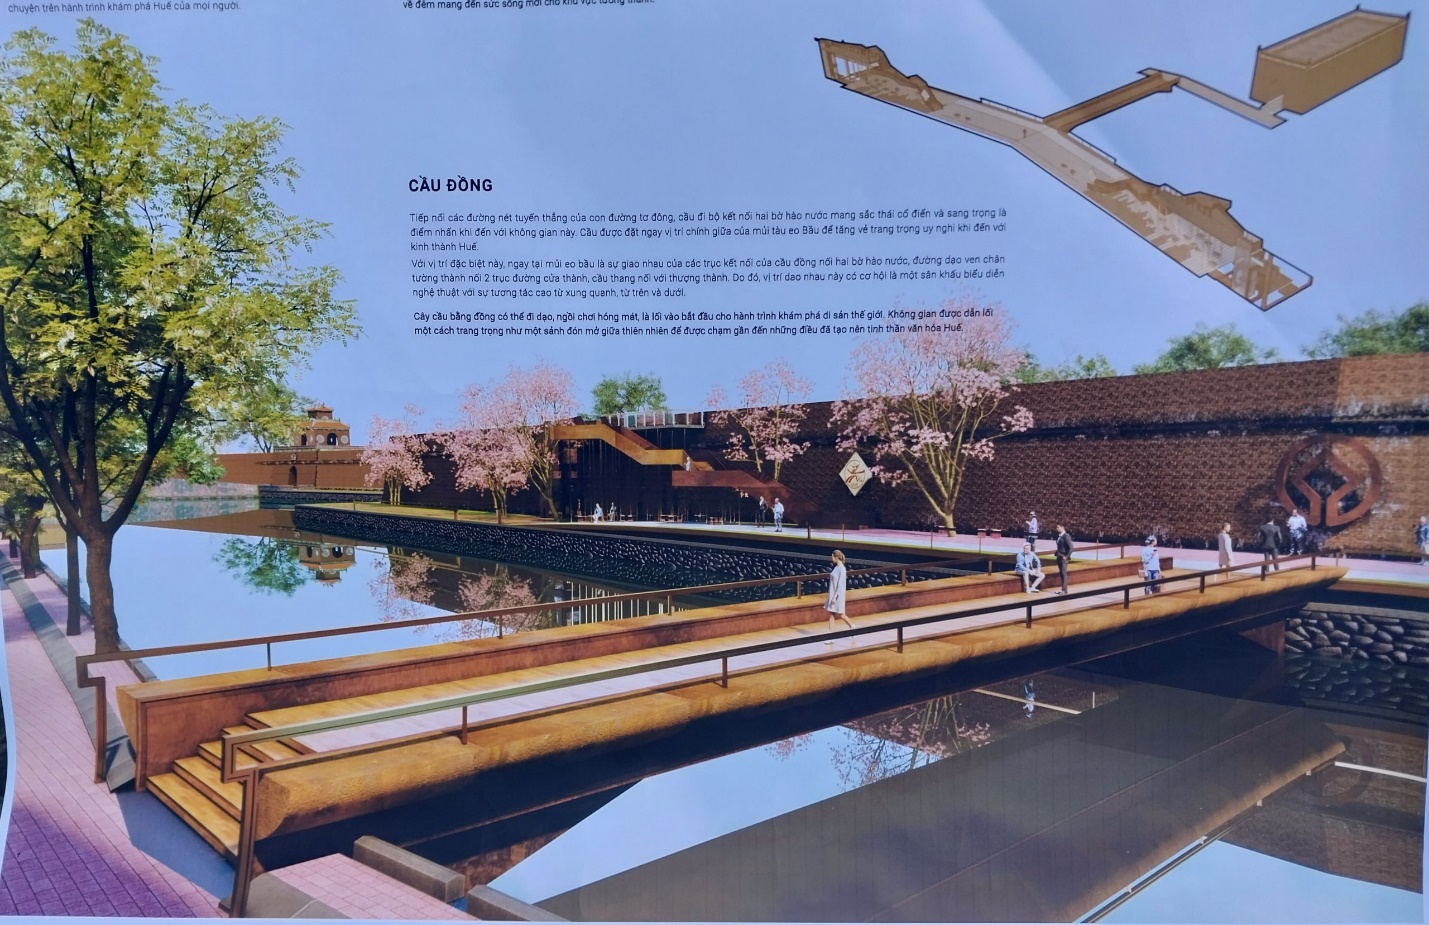 Trao giải cuộc thi ‘Ý tưởng thiết kế cầu đi bộ vượt qua Hộ Thành Hào nối Thượng thành’ - 3